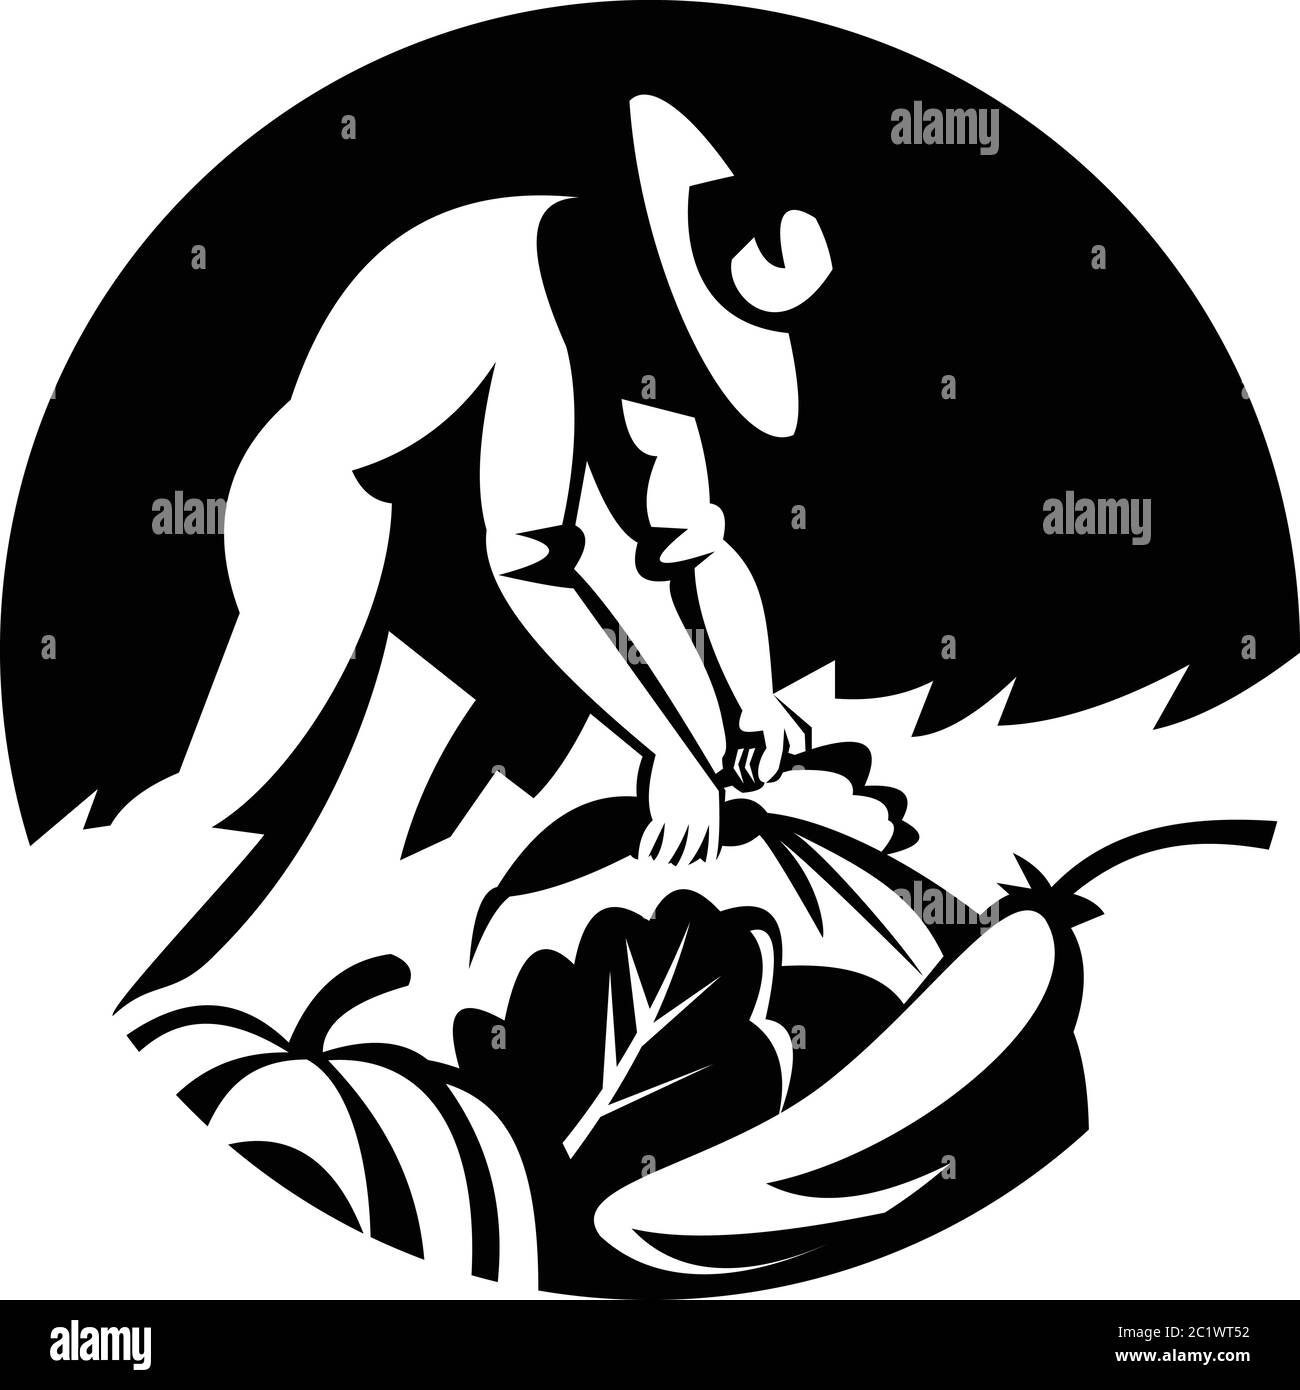 Illustration noire et blanche d'un fermier biologique récolte de légumes comme le concombre courge carotte vert légume vert feuillu ensemble à l'intérieur du cercle don Illustration de Vecteur